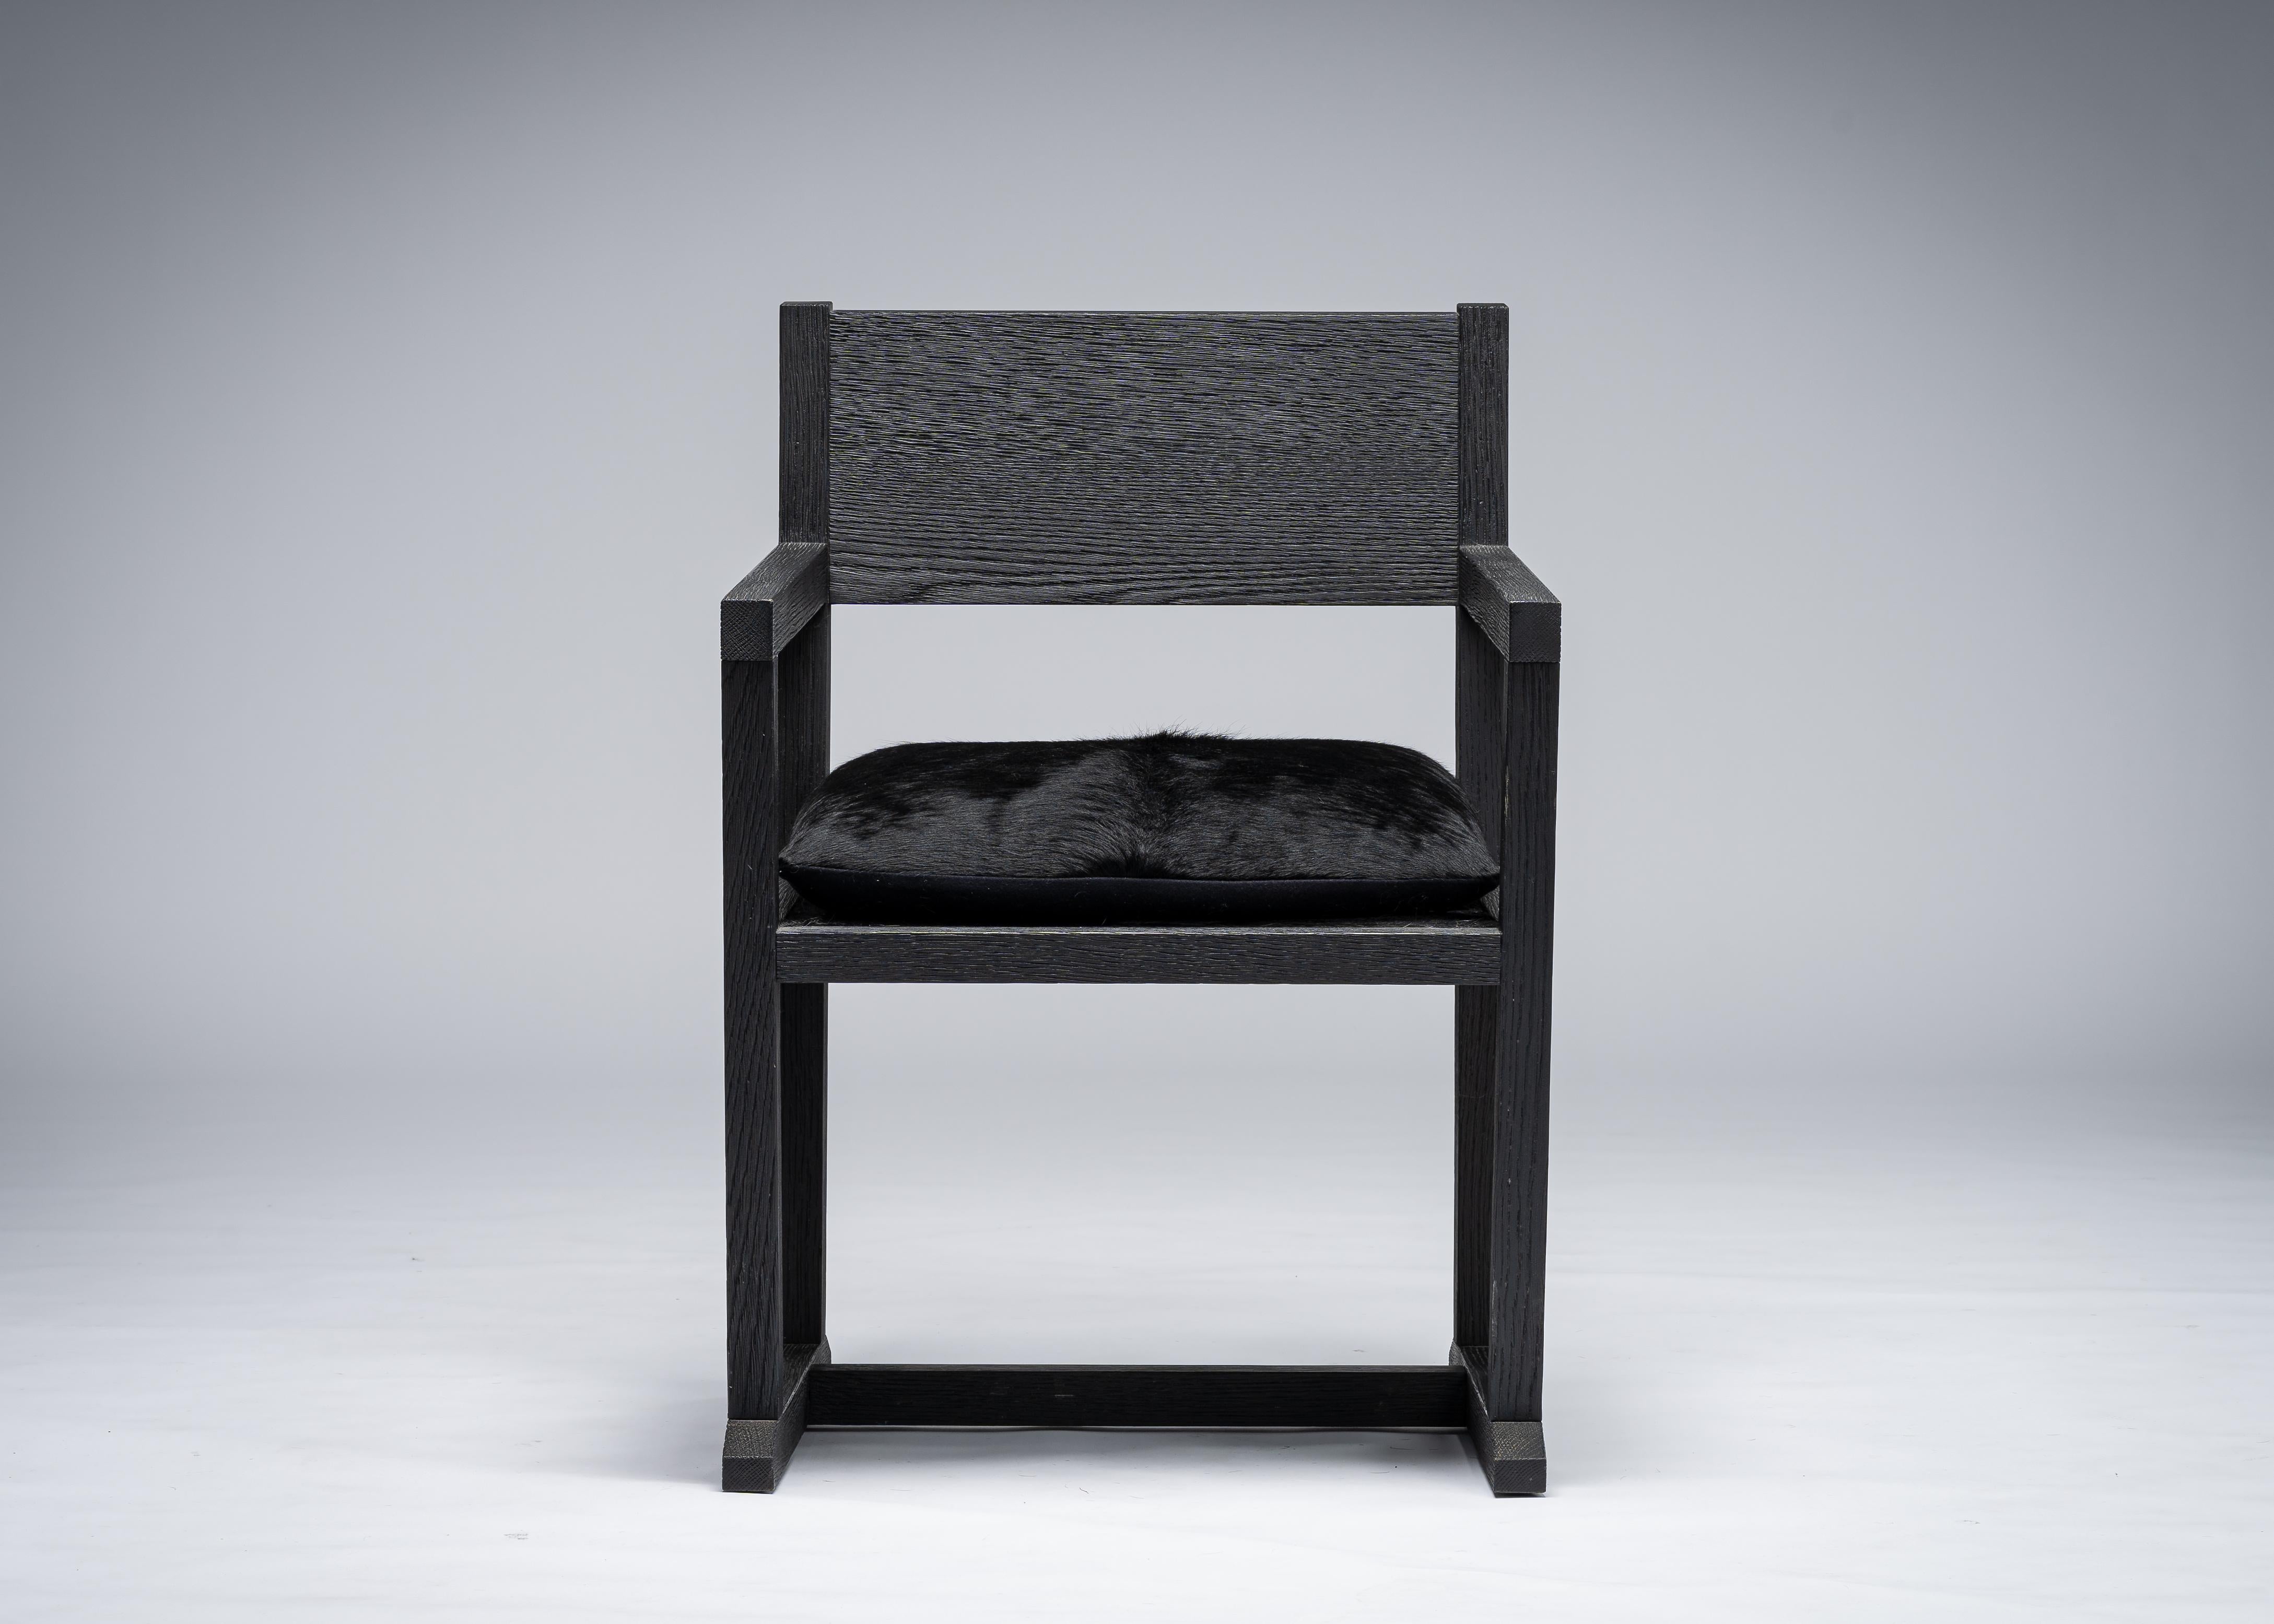 Chaise Louis par Mandy Graham

Louis
L01 - chaise / fauteuil / bureau / chaise de salle à manger
Siège en chêne sablé/cuir de vache laitier
Mesures : 24